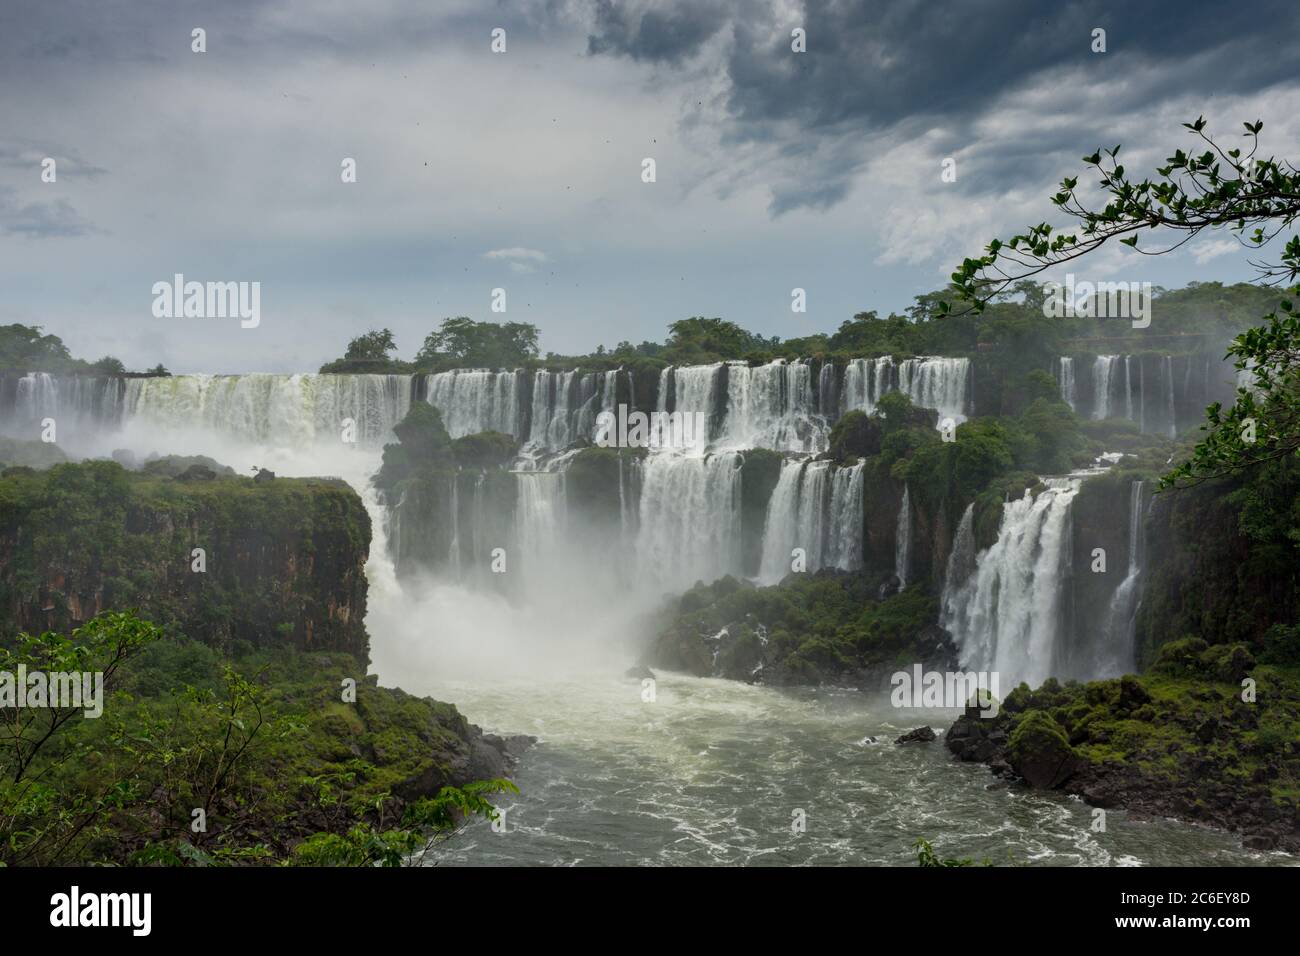 Iguazu Falls / Cataratas del Iguazú in Misiones Province, Argentina Stock Photo